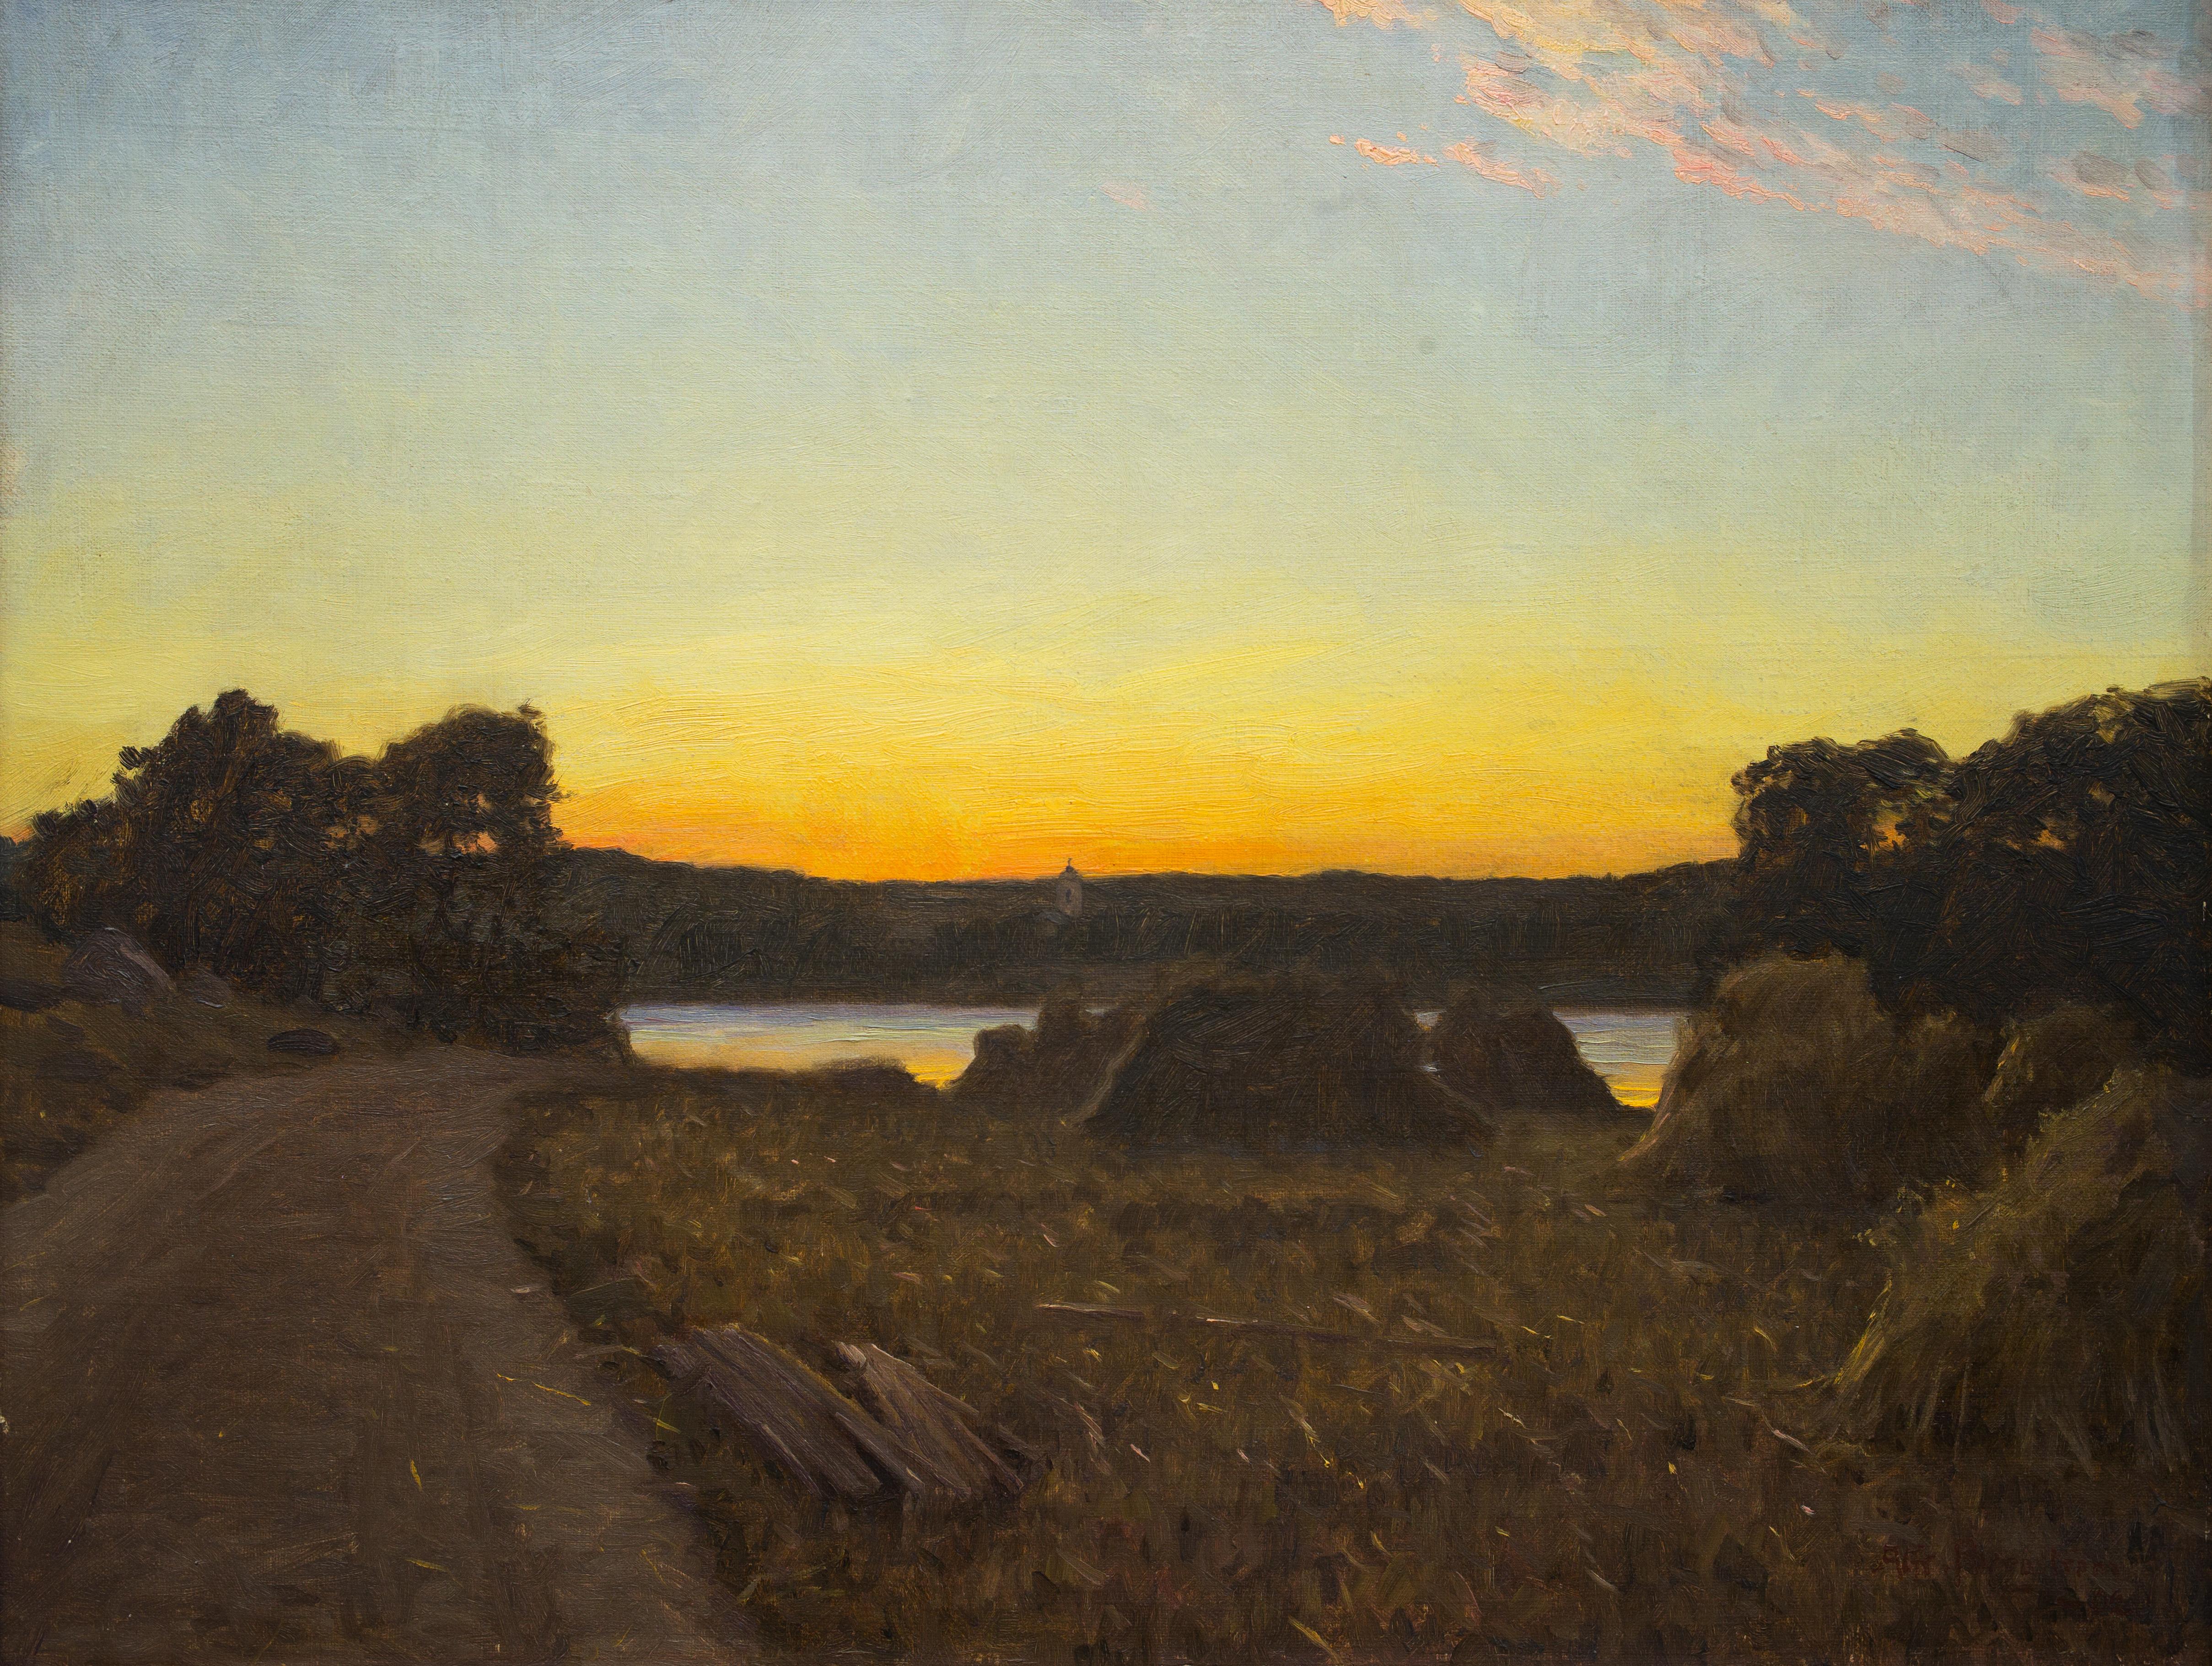 Lever de soleil sur les champs par l'artiste suédois Alfred Bergström, 1902, huile sur toile